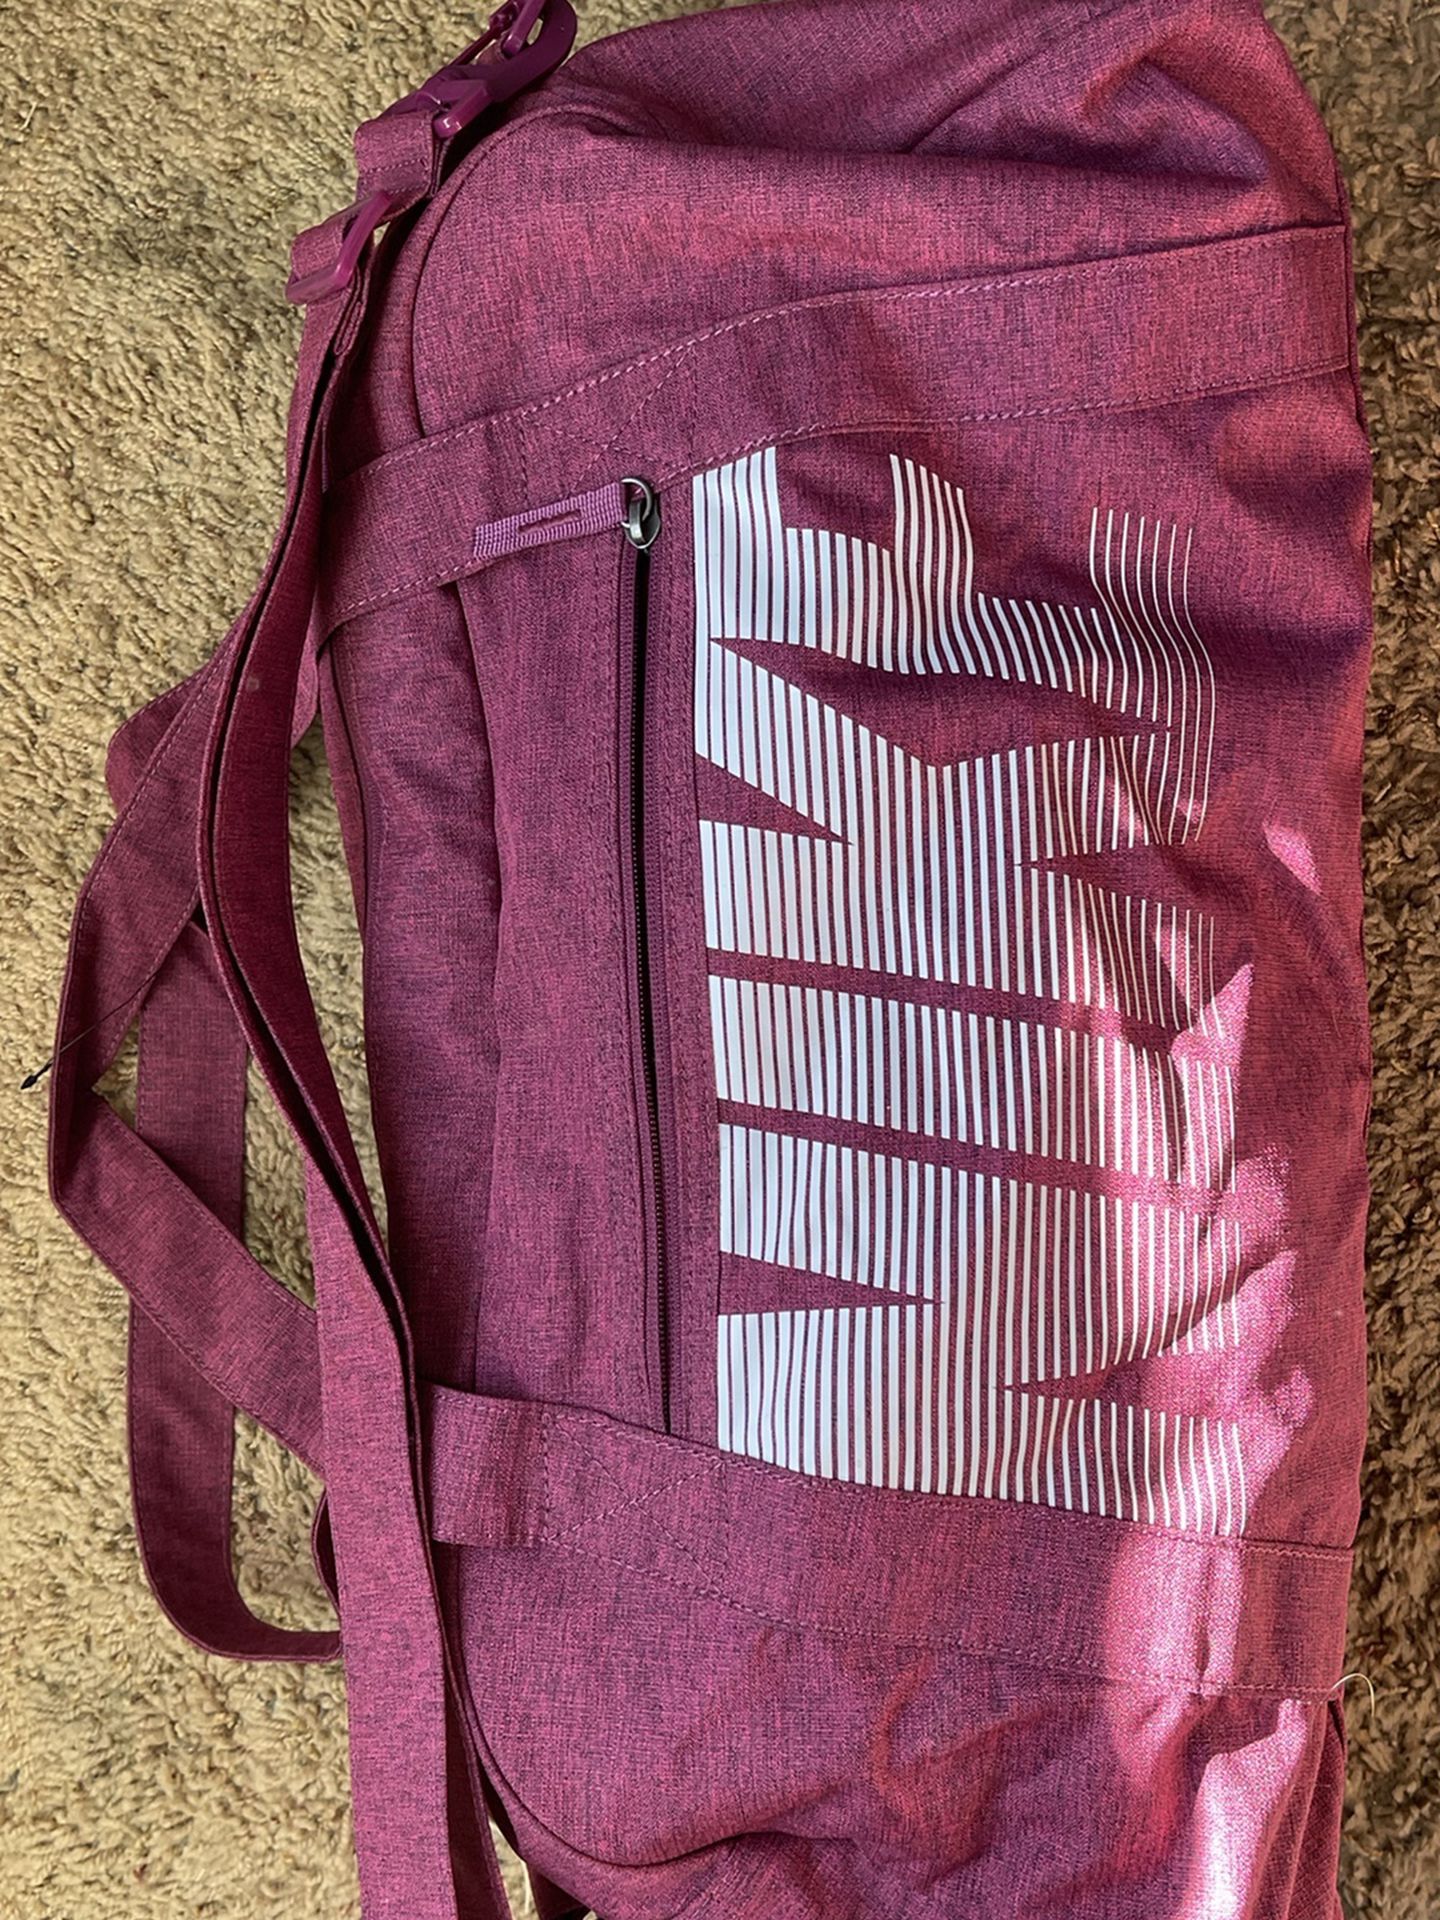 Nike Duffle Bag (maroon) Like New